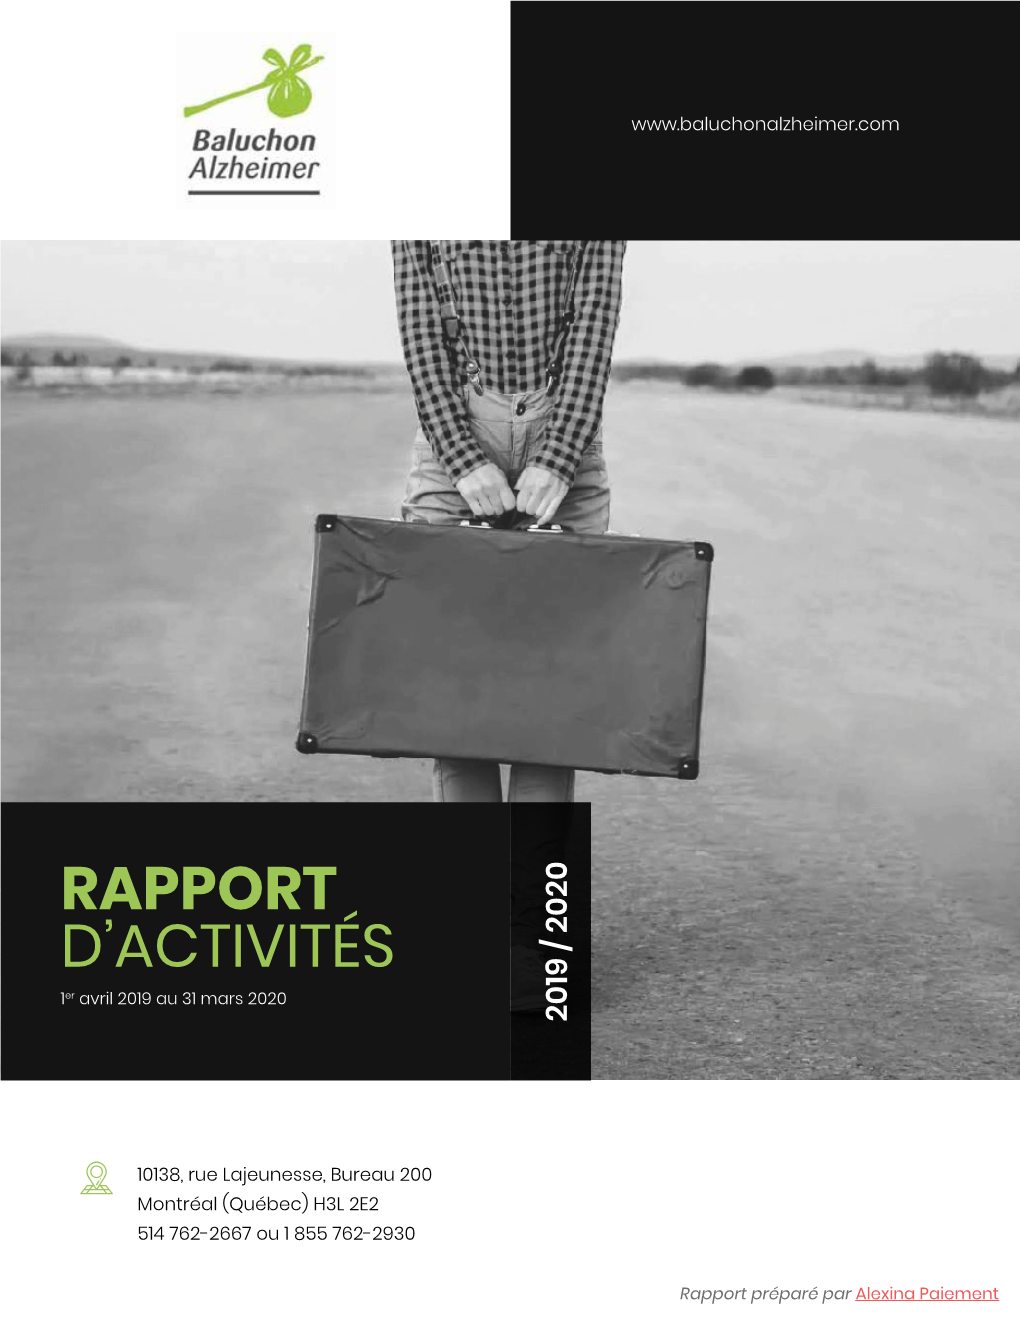 Rapport D'activités Baluchon Alzheimer 2019 2020